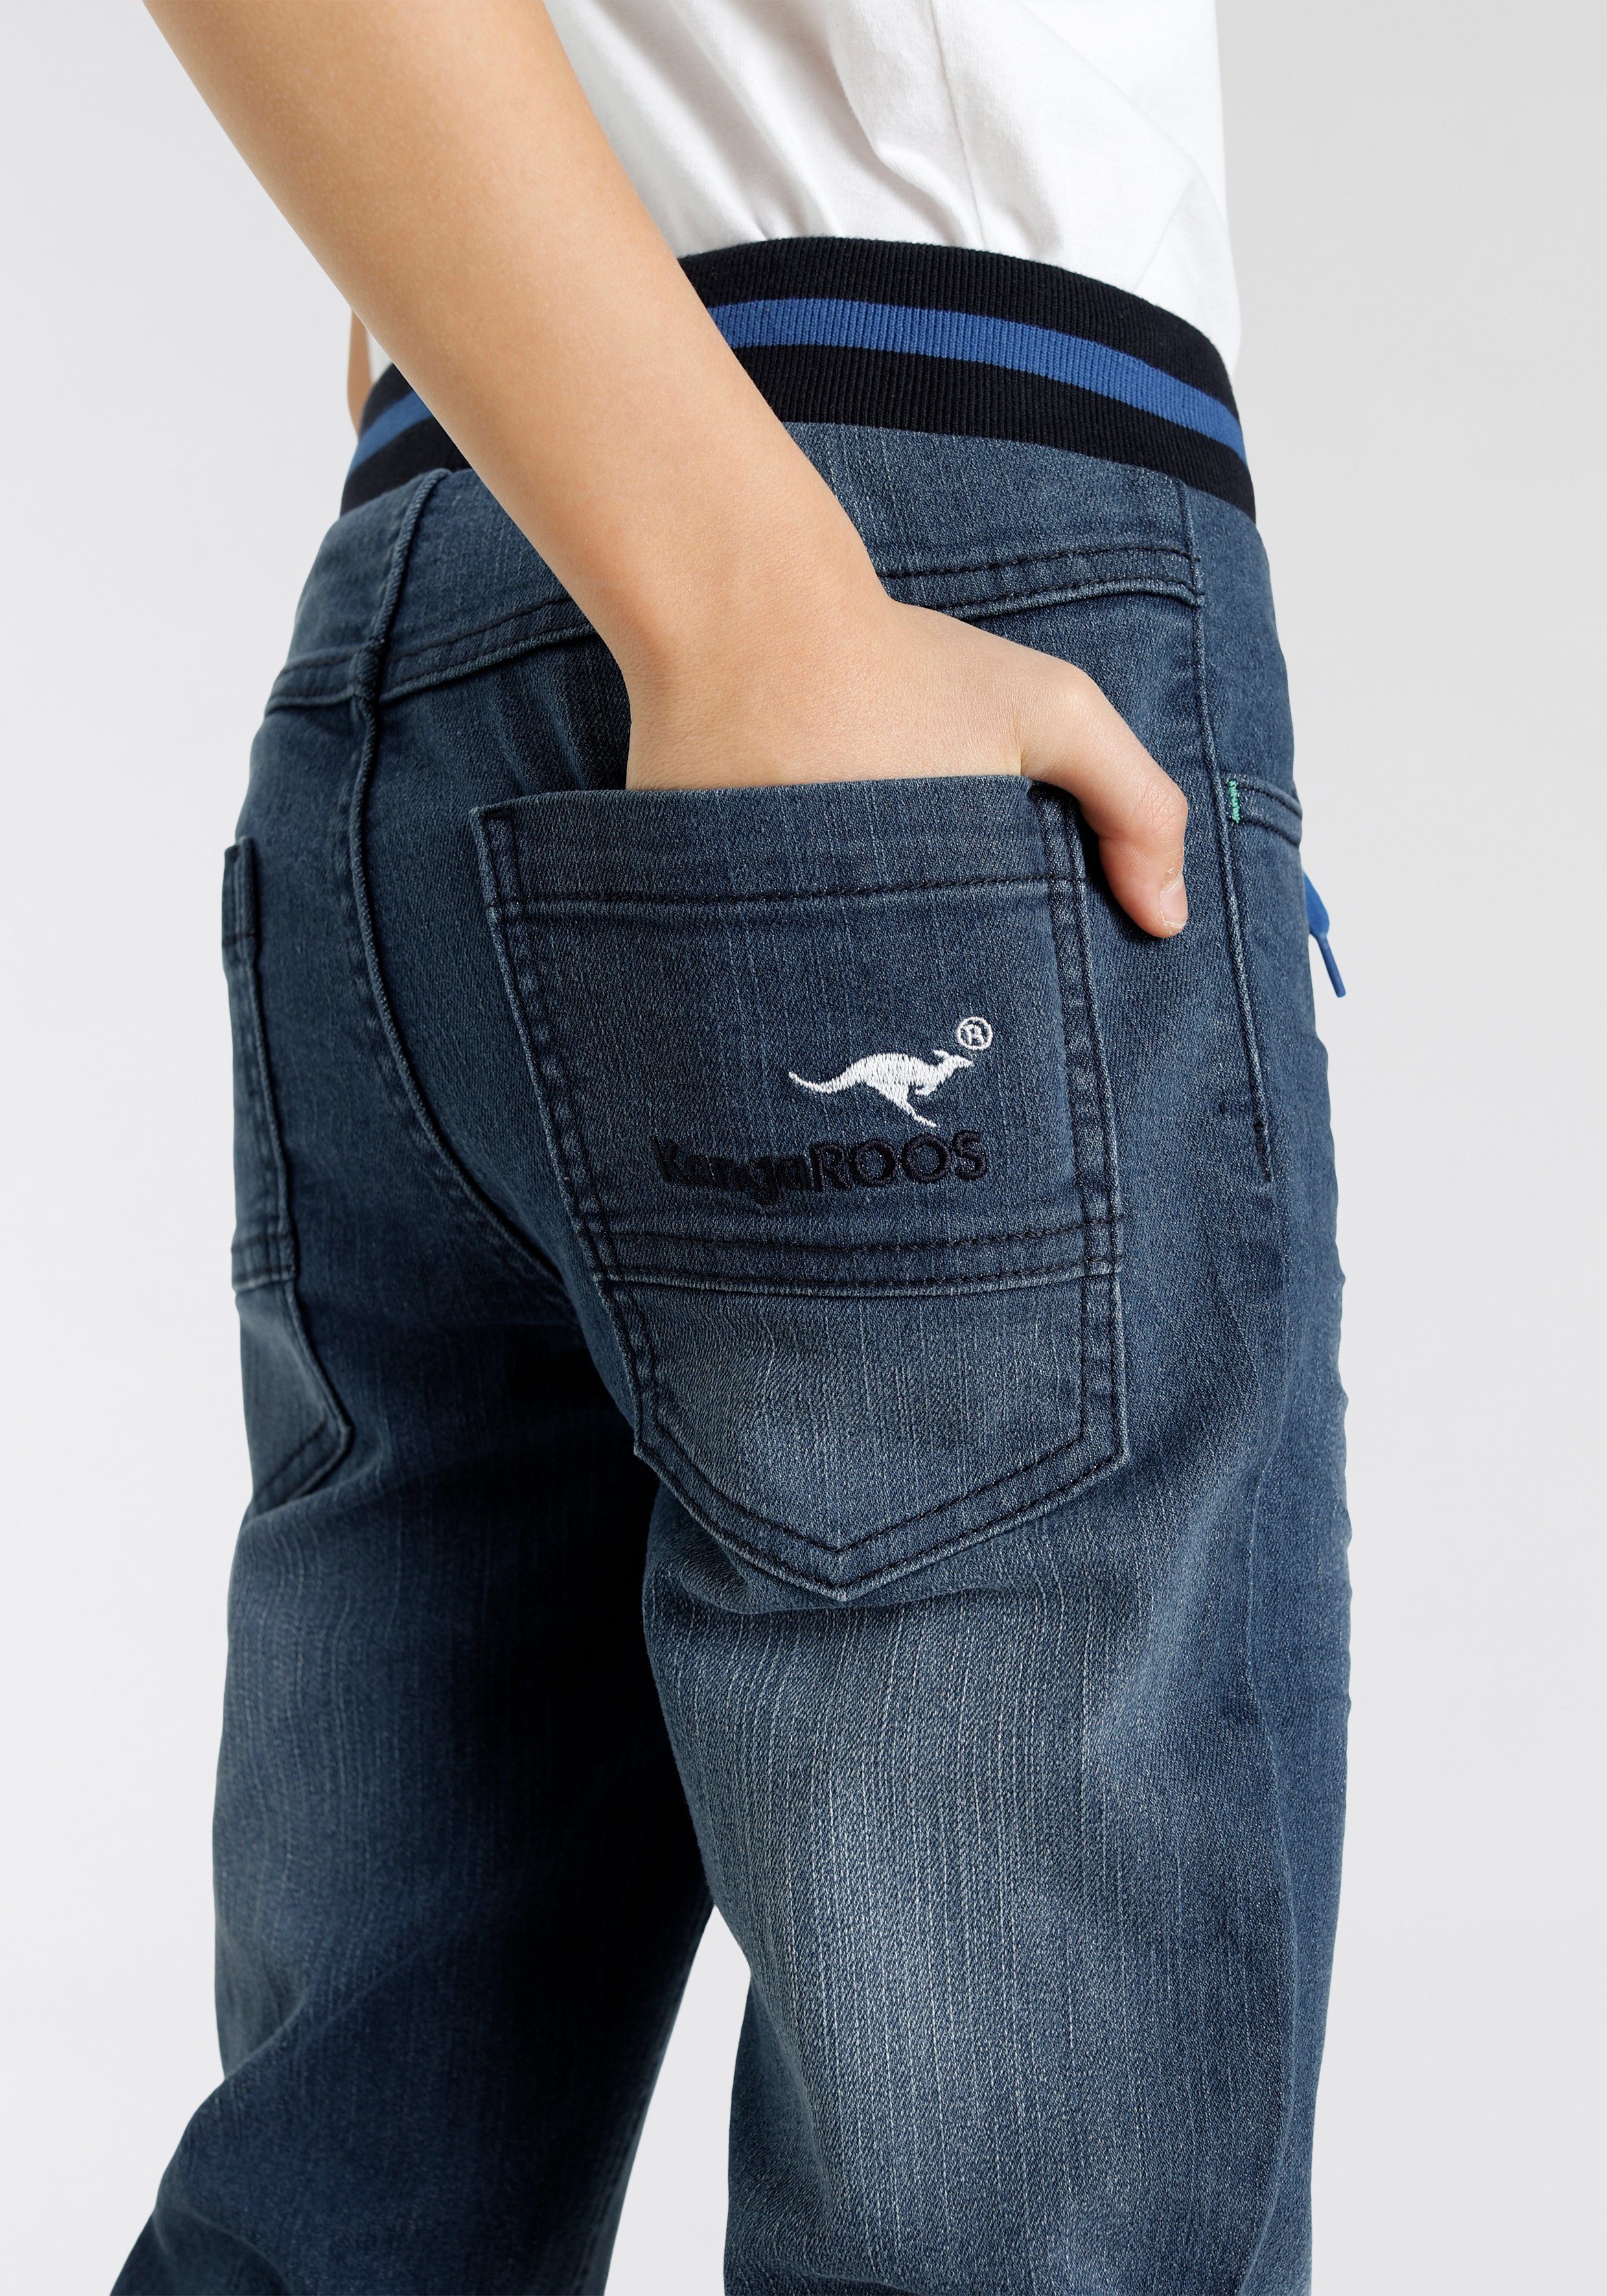 KangaROOS in authentischer Denim Waschung Stretch-Jeans